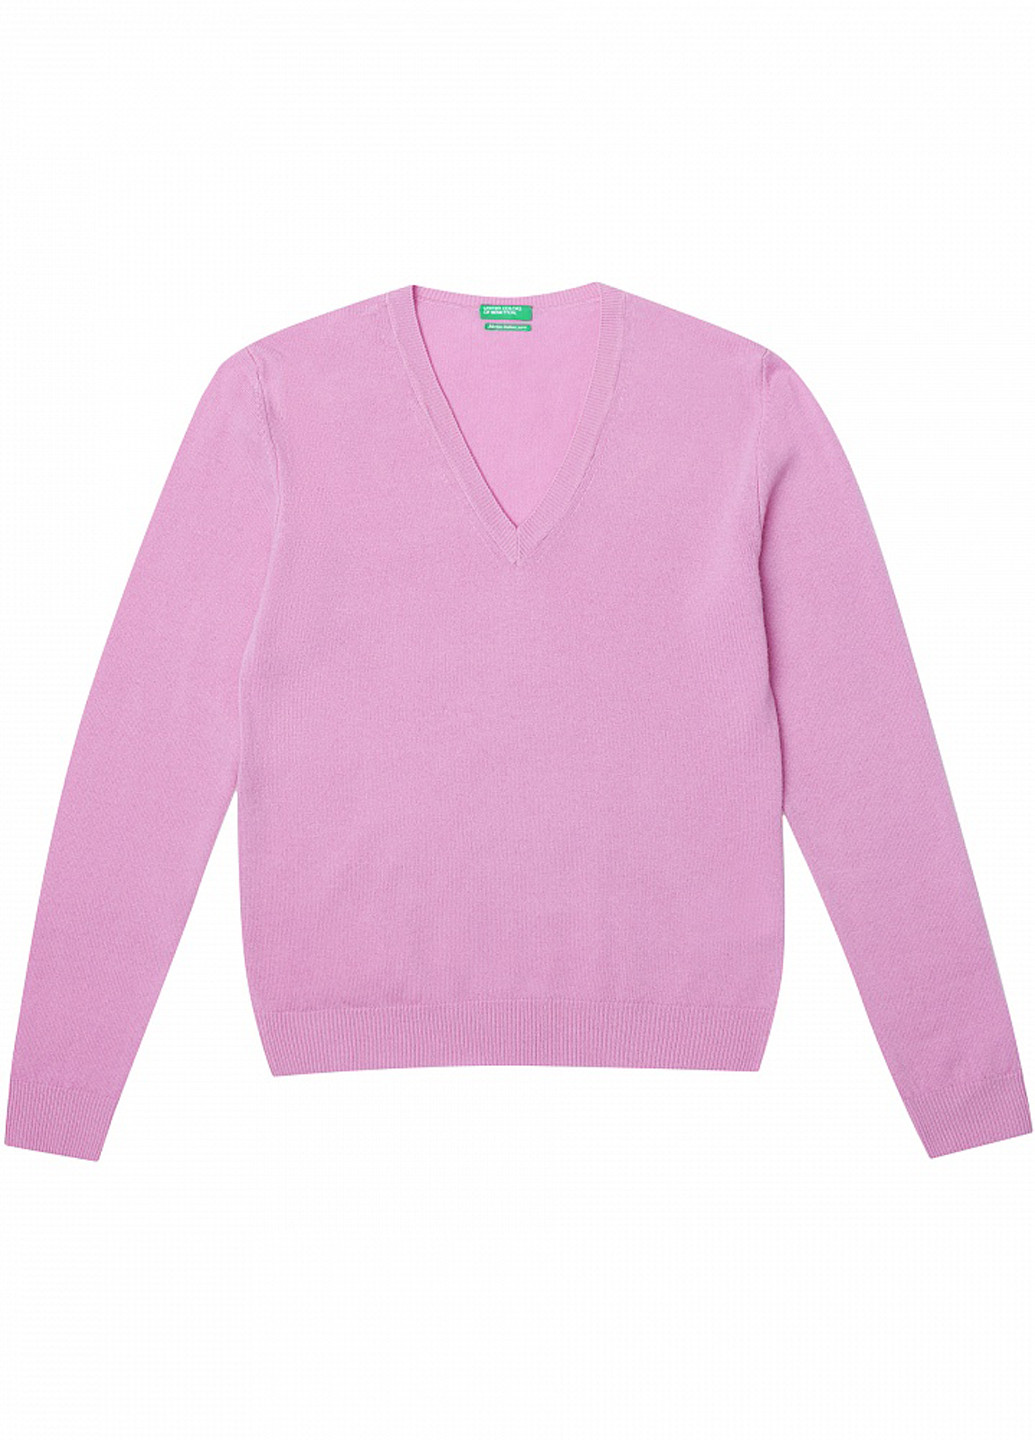 Розовый демисезонный пуловер пуловер United Colors of Benetton